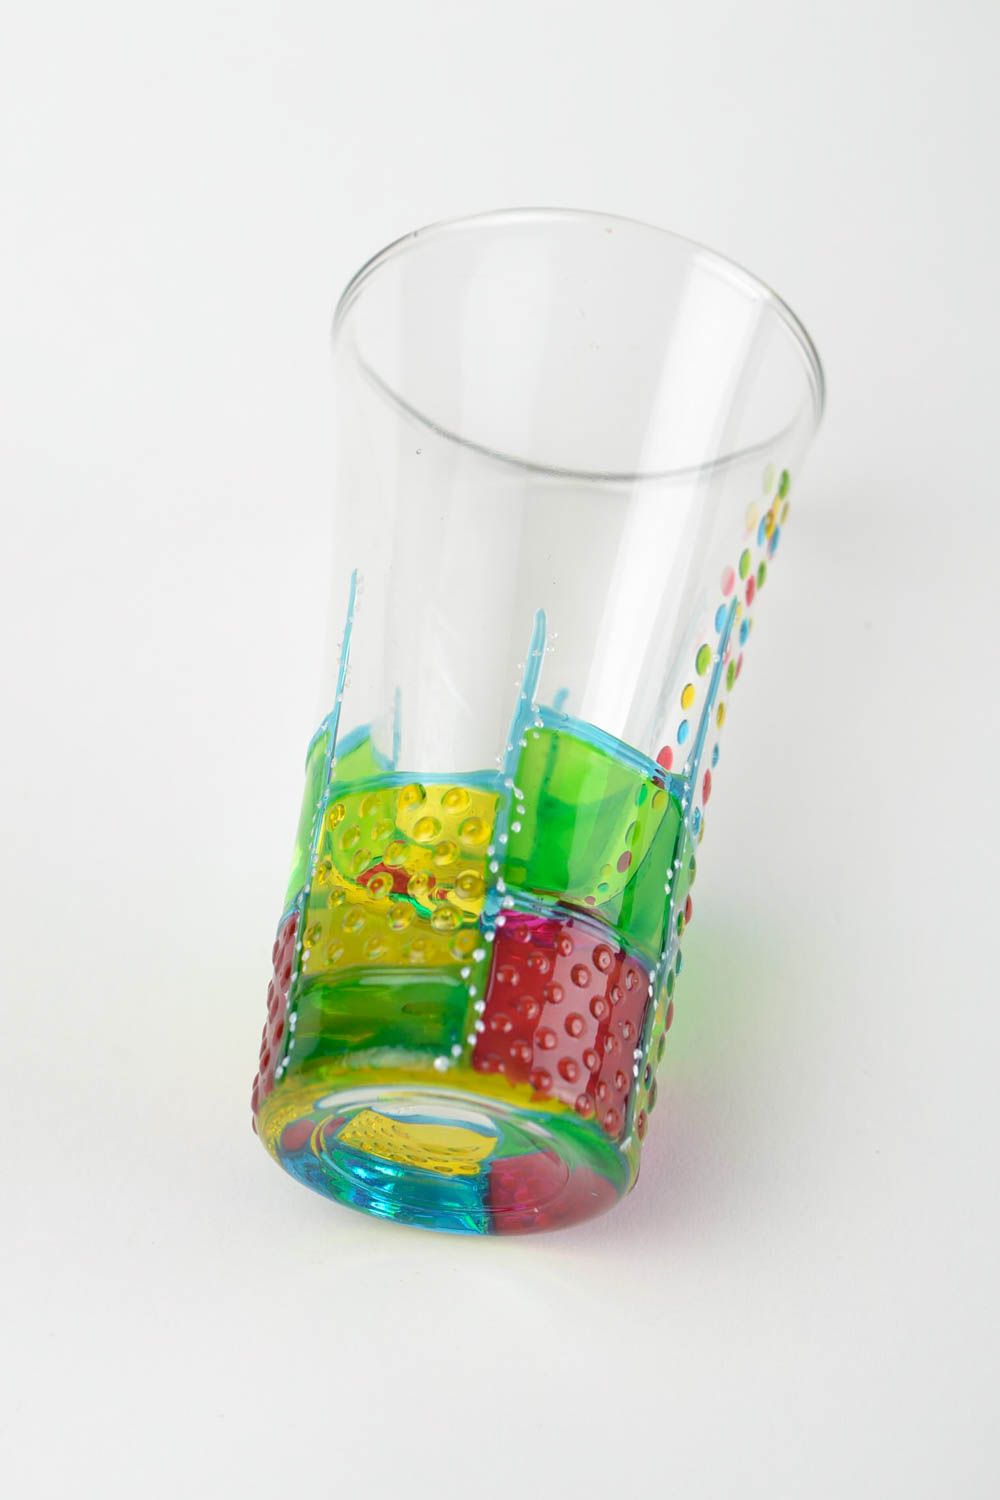 Handmade shot glasses designer glass tableware ideas for home decor photo 5